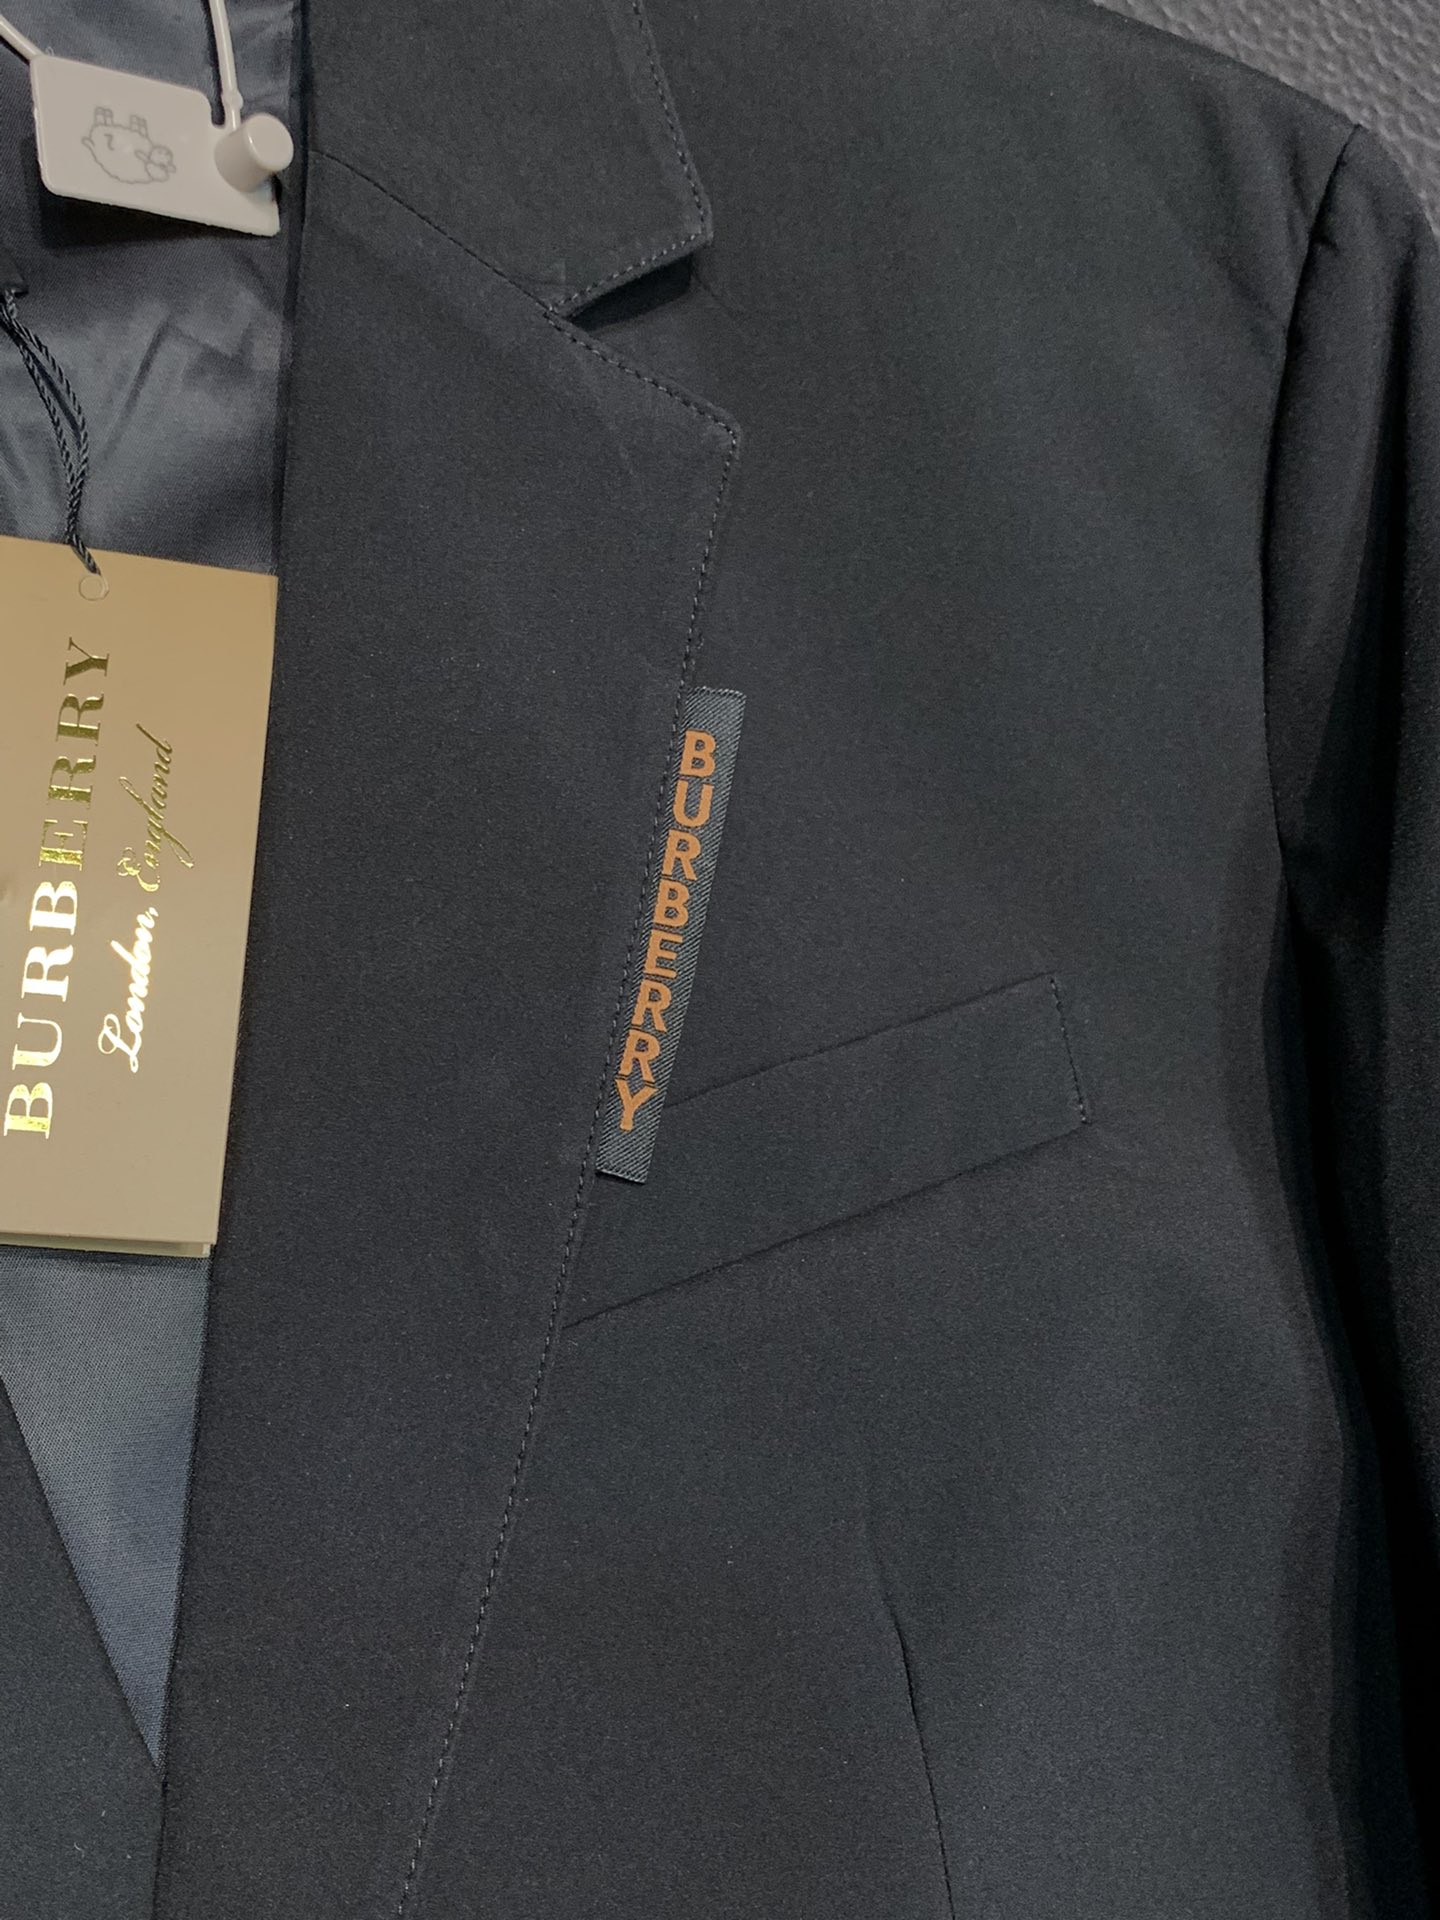 BBR巴宝莉独家专供新款西服外套简约休闲西装外套进口原版聚酯纤维面料透气柔软保暖性很强笔挺垂感十足整件衣